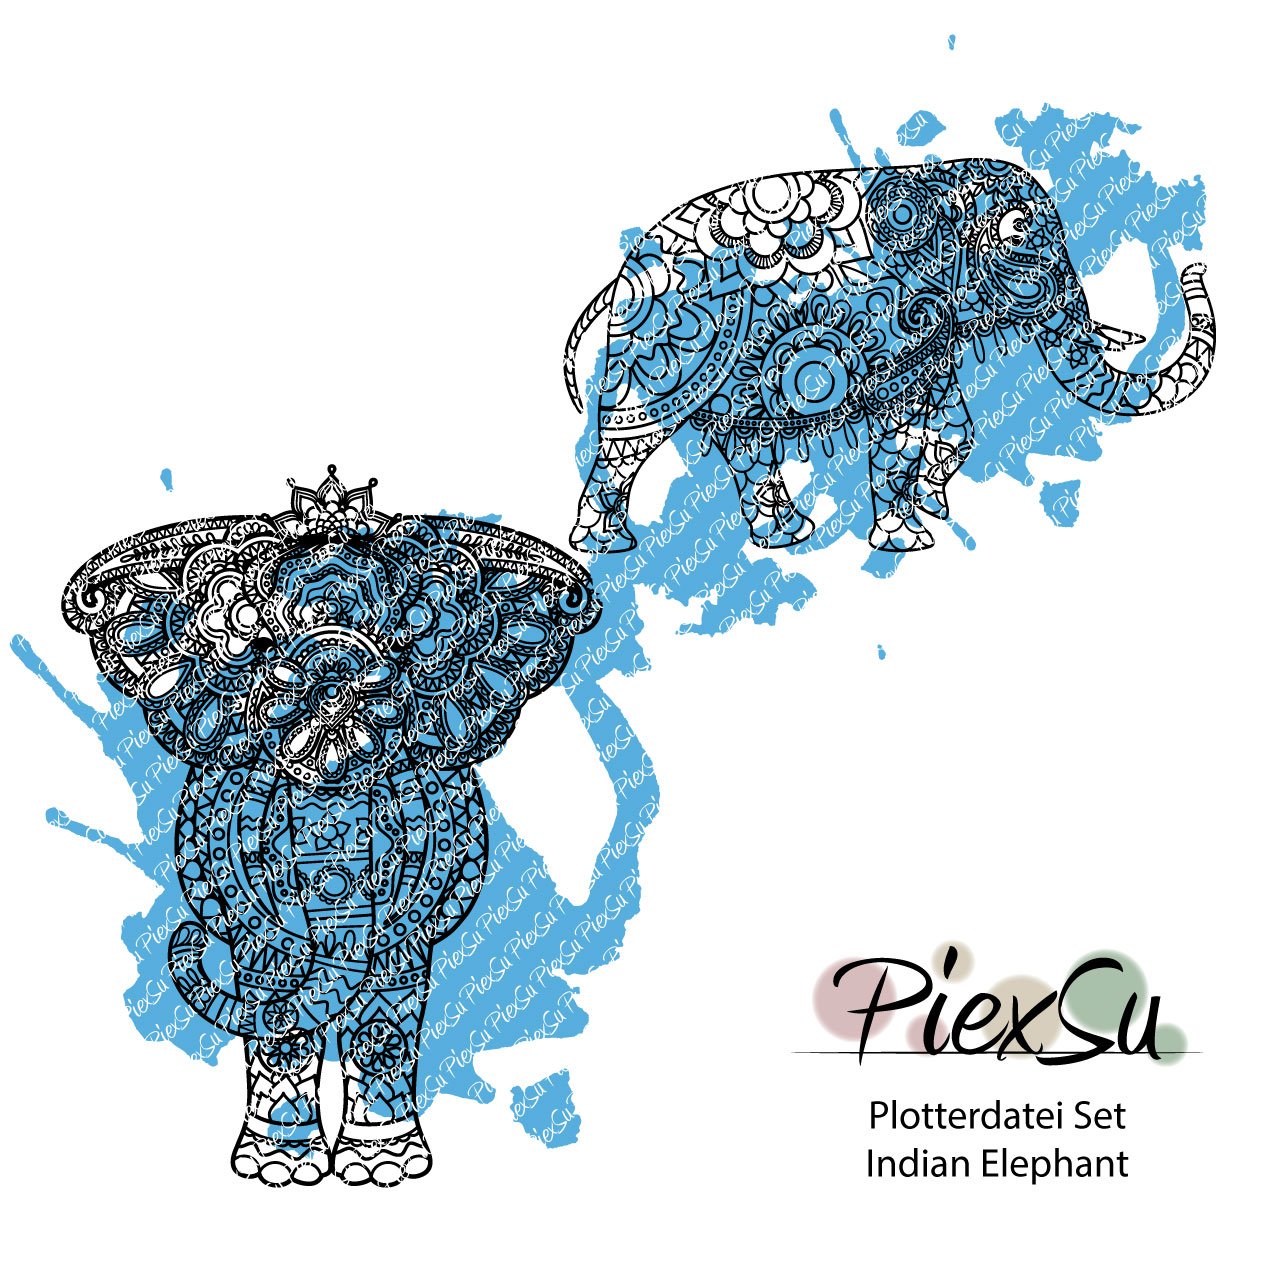 PiexSu-Plotterdatei-Set-Indian-Elephant-plotten-dxf-svg-Titelbild